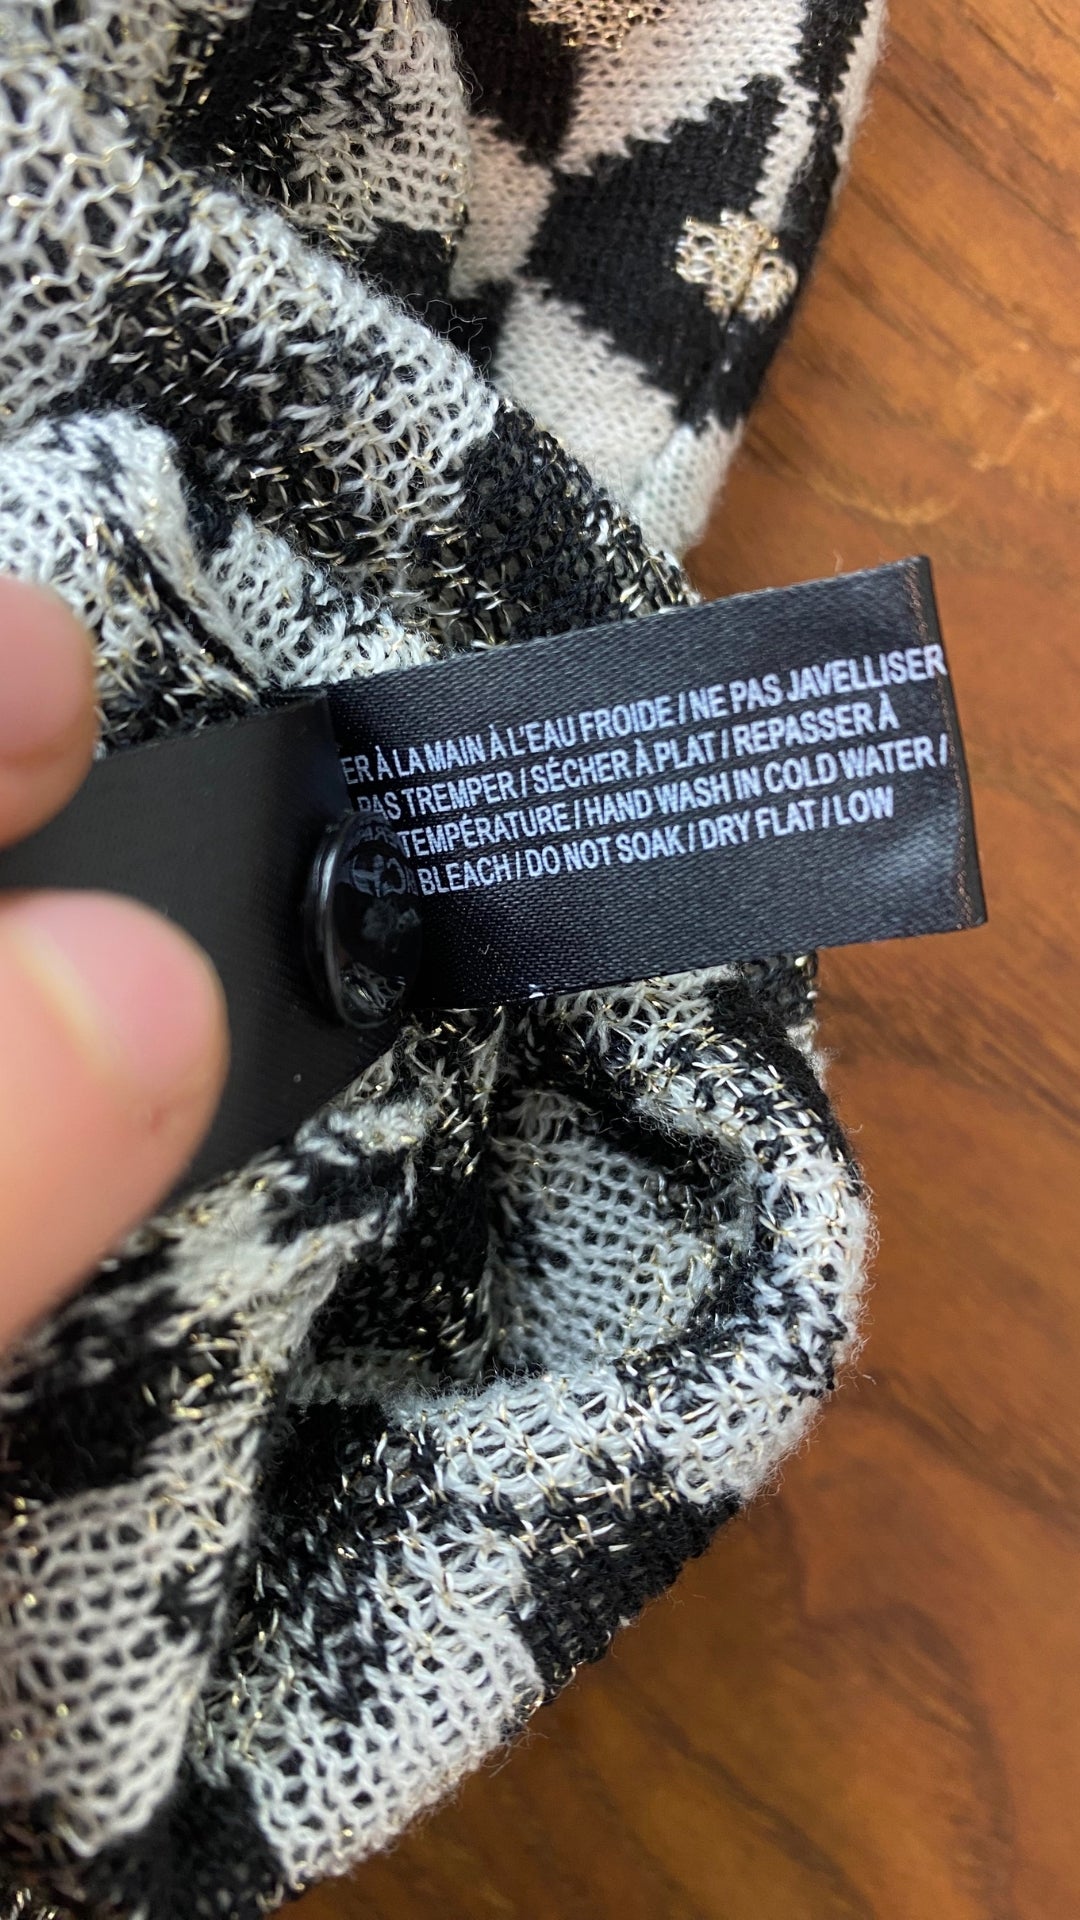 Cardigan tricot motif geo Icône, taille small. Vue de l'étiquette d'entretien.